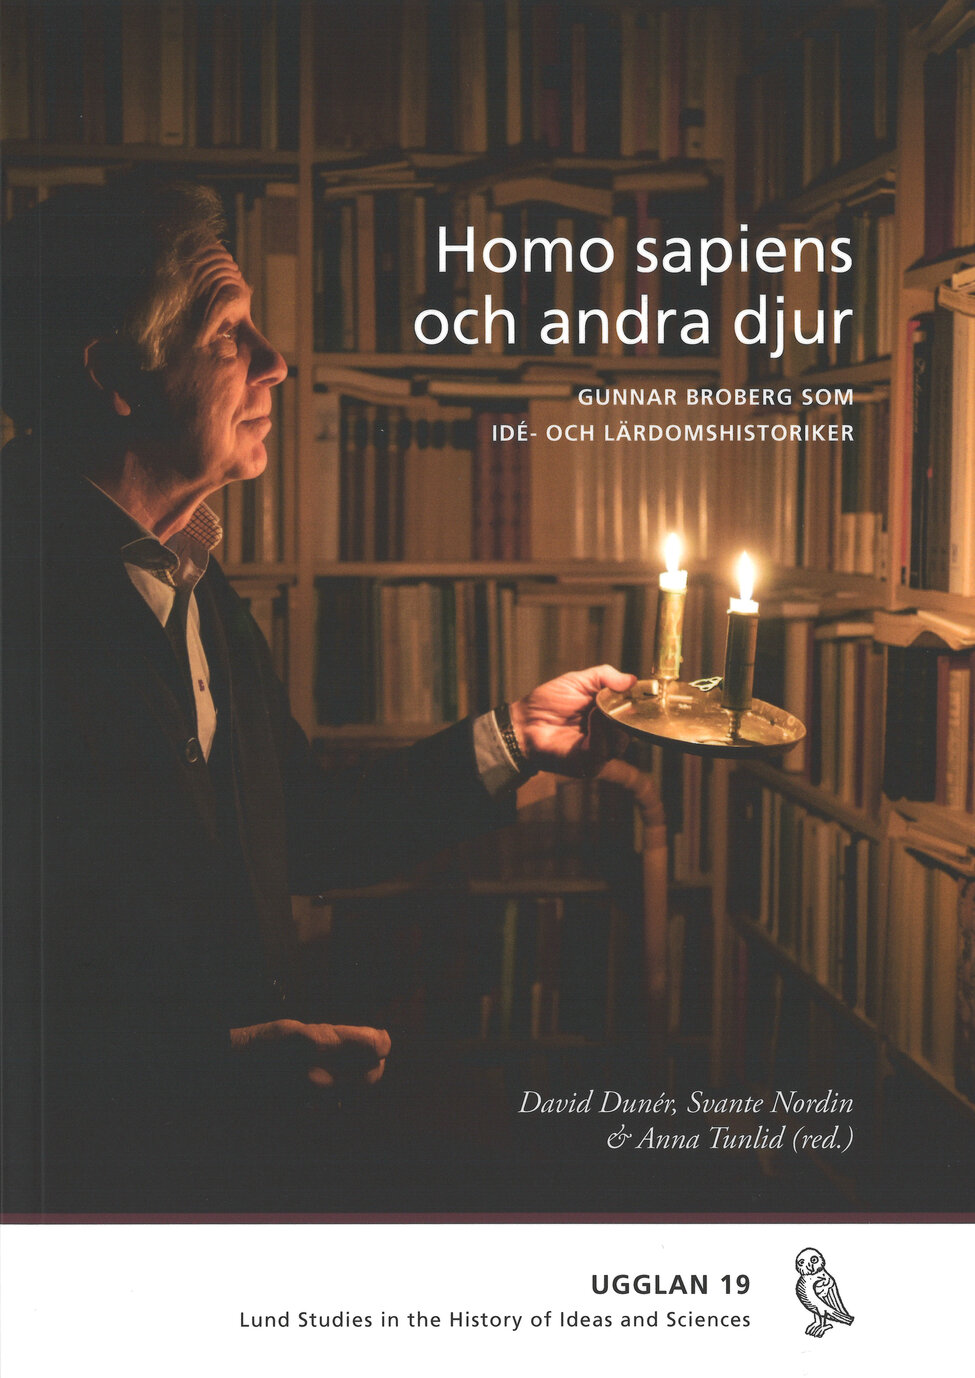 Omslagsbild. Gunnar Broberg lyser upp sin bokhylla med en ljusstake med två stearinljus. Foto.